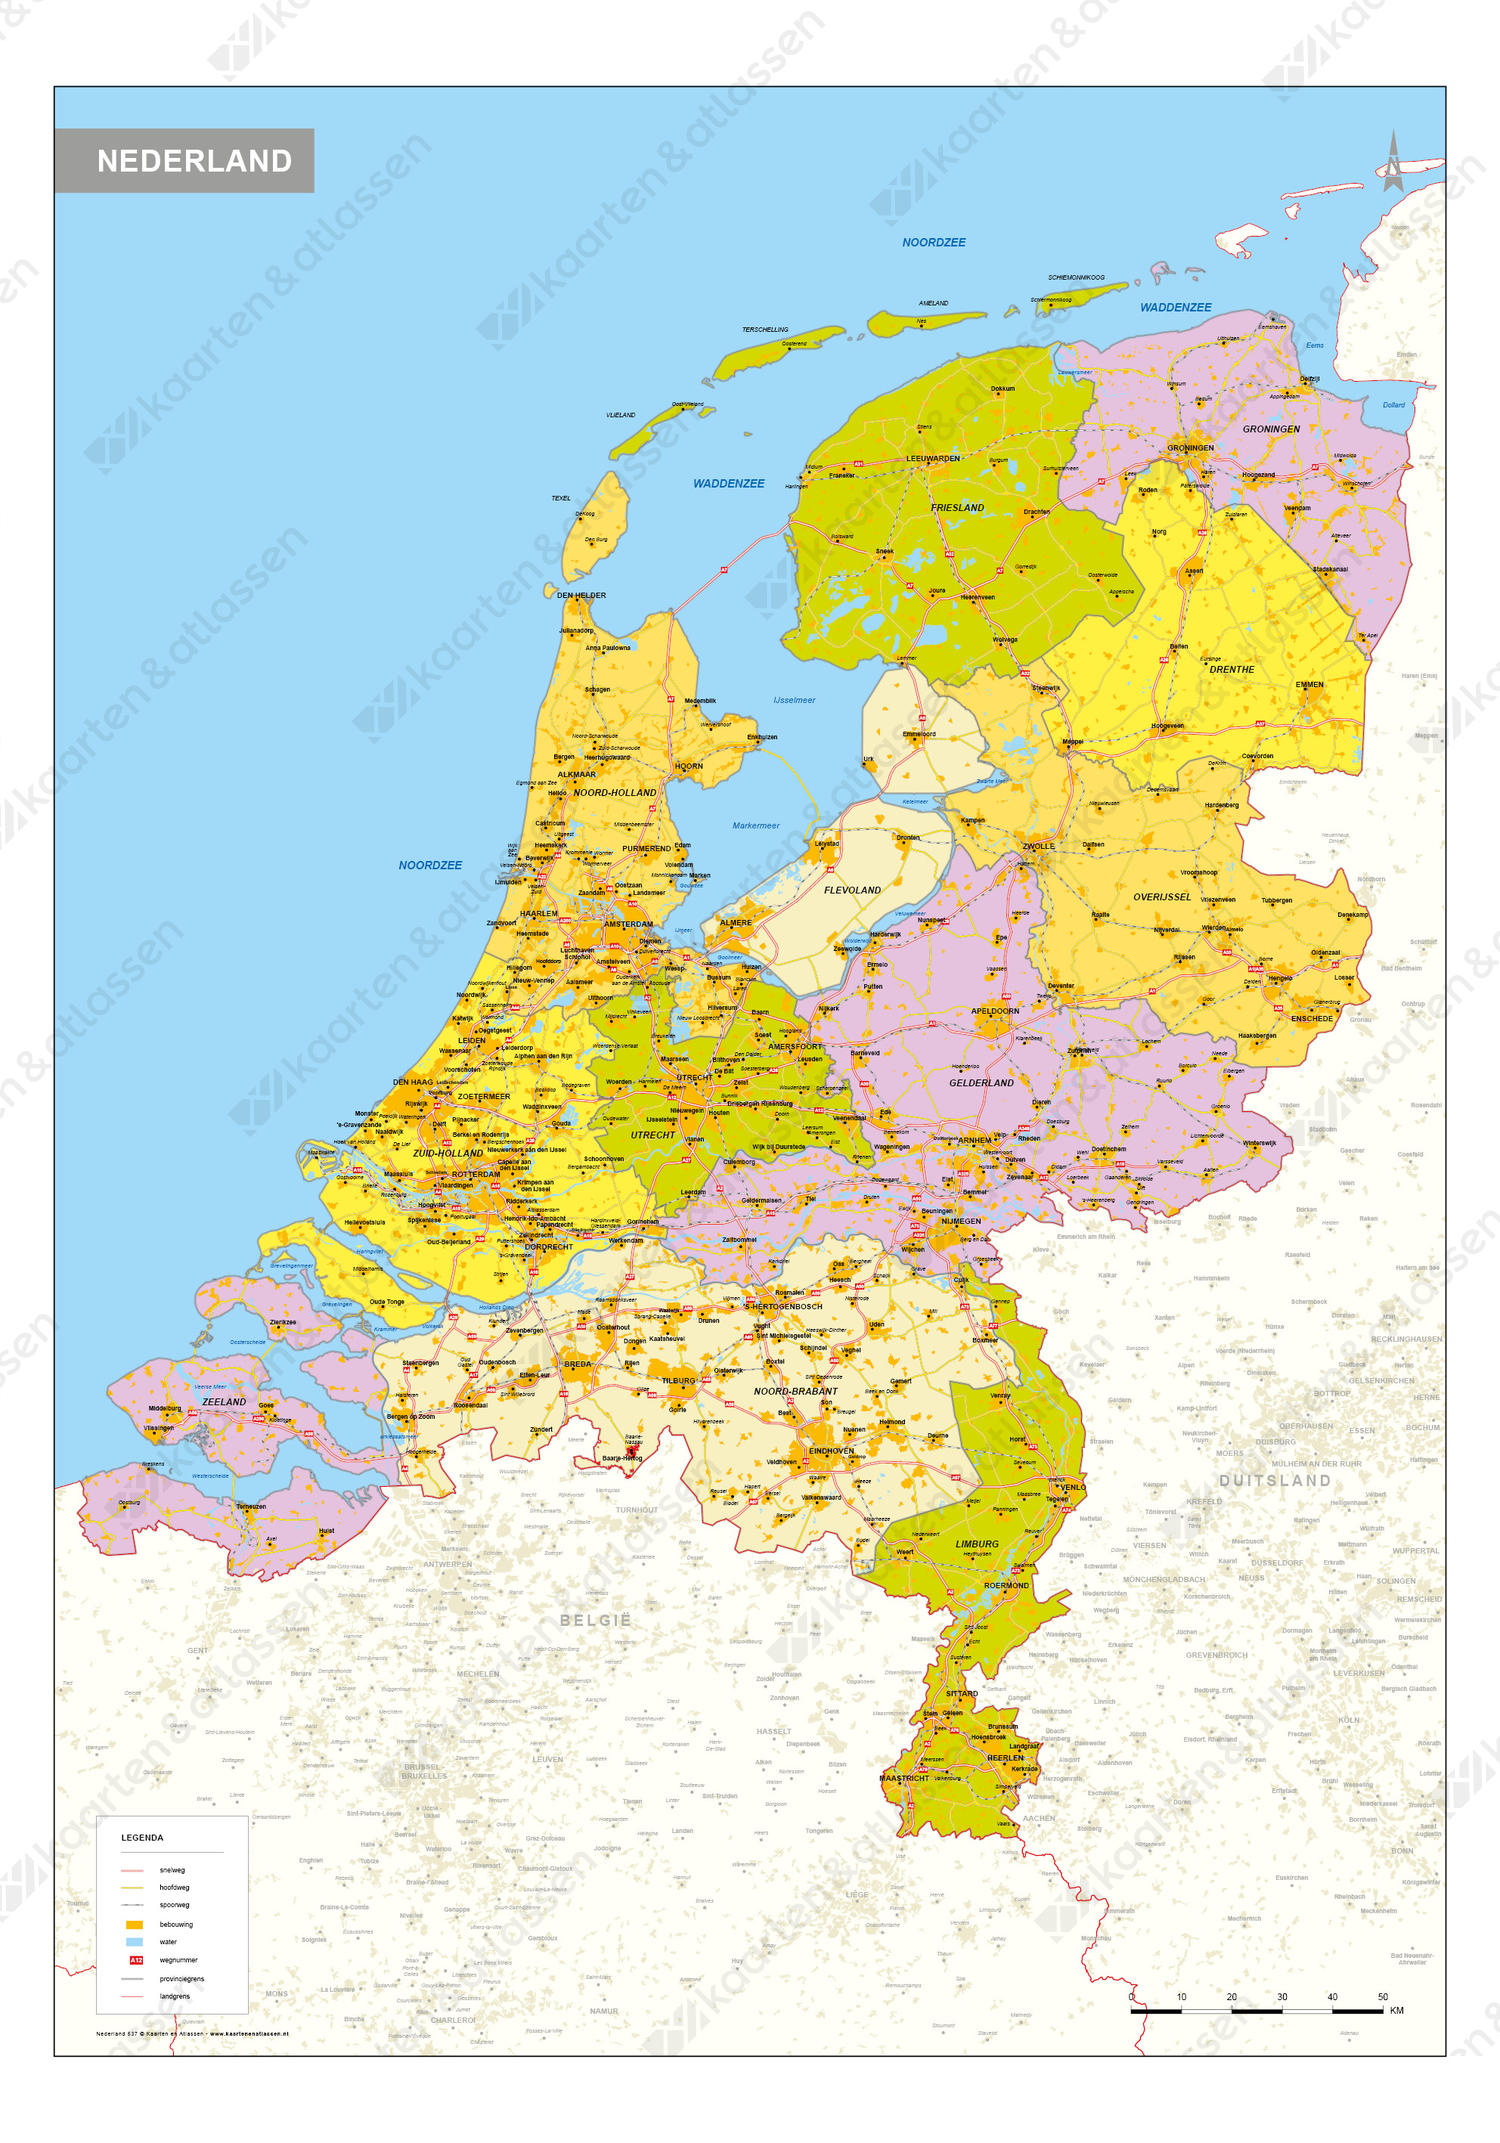 klasse Scheiden lobby Digitale Gedetailleerde kaart van Nederland 537 | Kaarten en Atlassen.nl